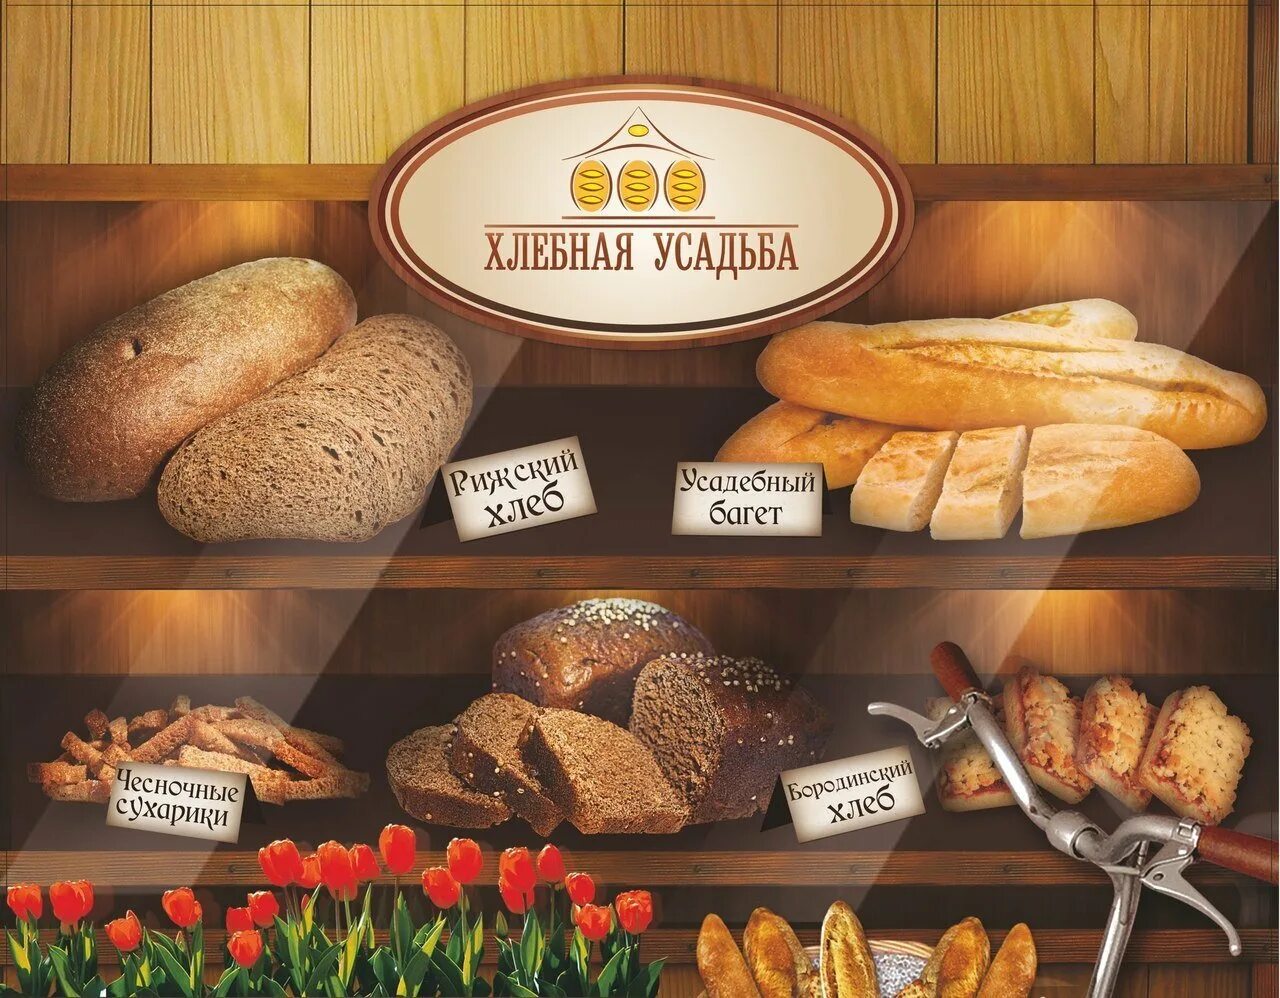 Пекарня хлеб отзывы. Хлебная пекарня. Ассортимент хлеба и хлебобулочных изделий. Хлебная усадьба. Пекарня Хлебная усадьба.